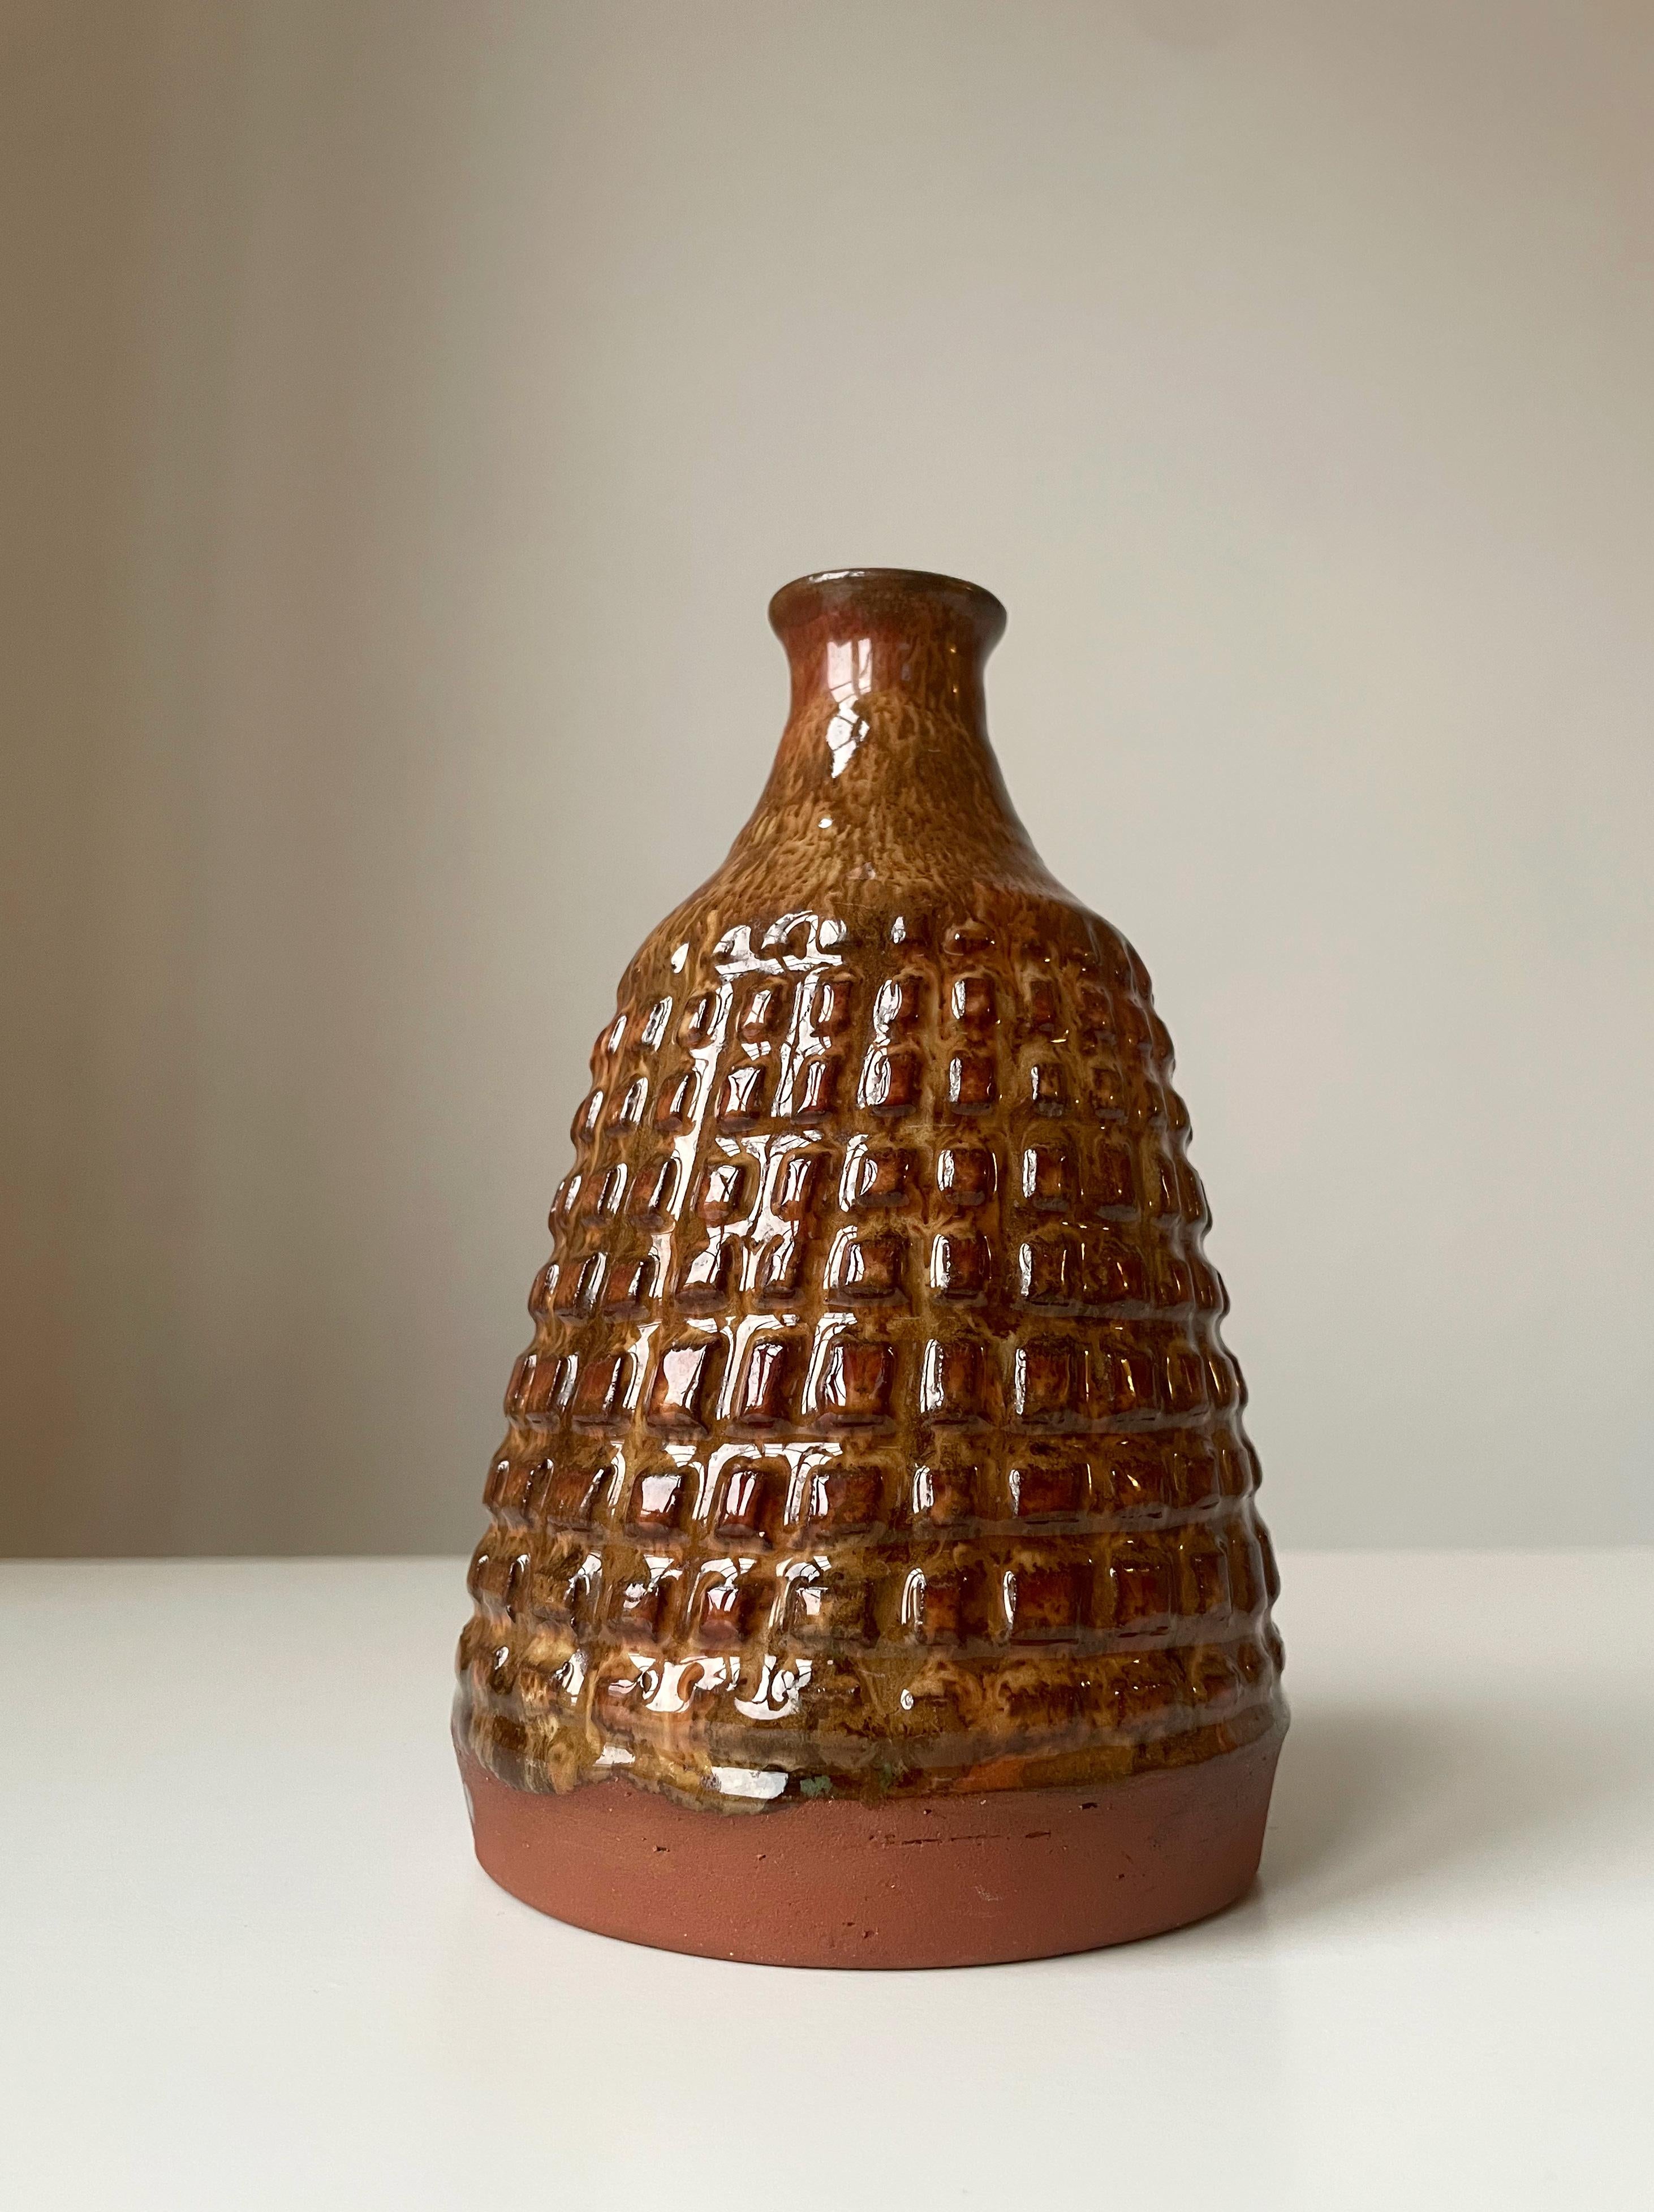 Schwere dänische Vase aus der Mitte des Jahrhunderts, handgefertigt aus Steinzeug in Kegelform, mit bernsteinfarbener, karamellfarbener und hickorybrauner Glasur über quadratischem Reliefdekor in einem organischen Muster um den Bauch. Schlanker Hals